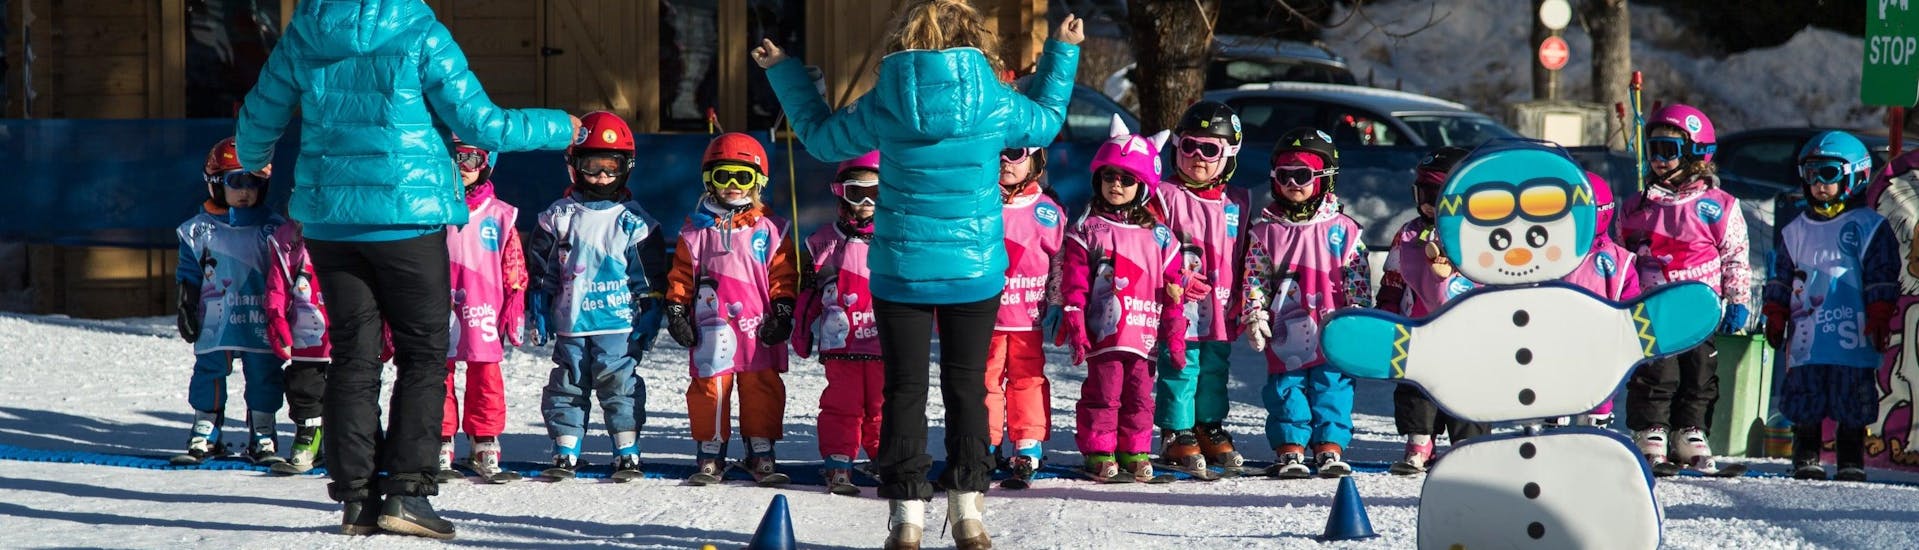 Clases de esquí para niños a partir de 5 años para debutantes.